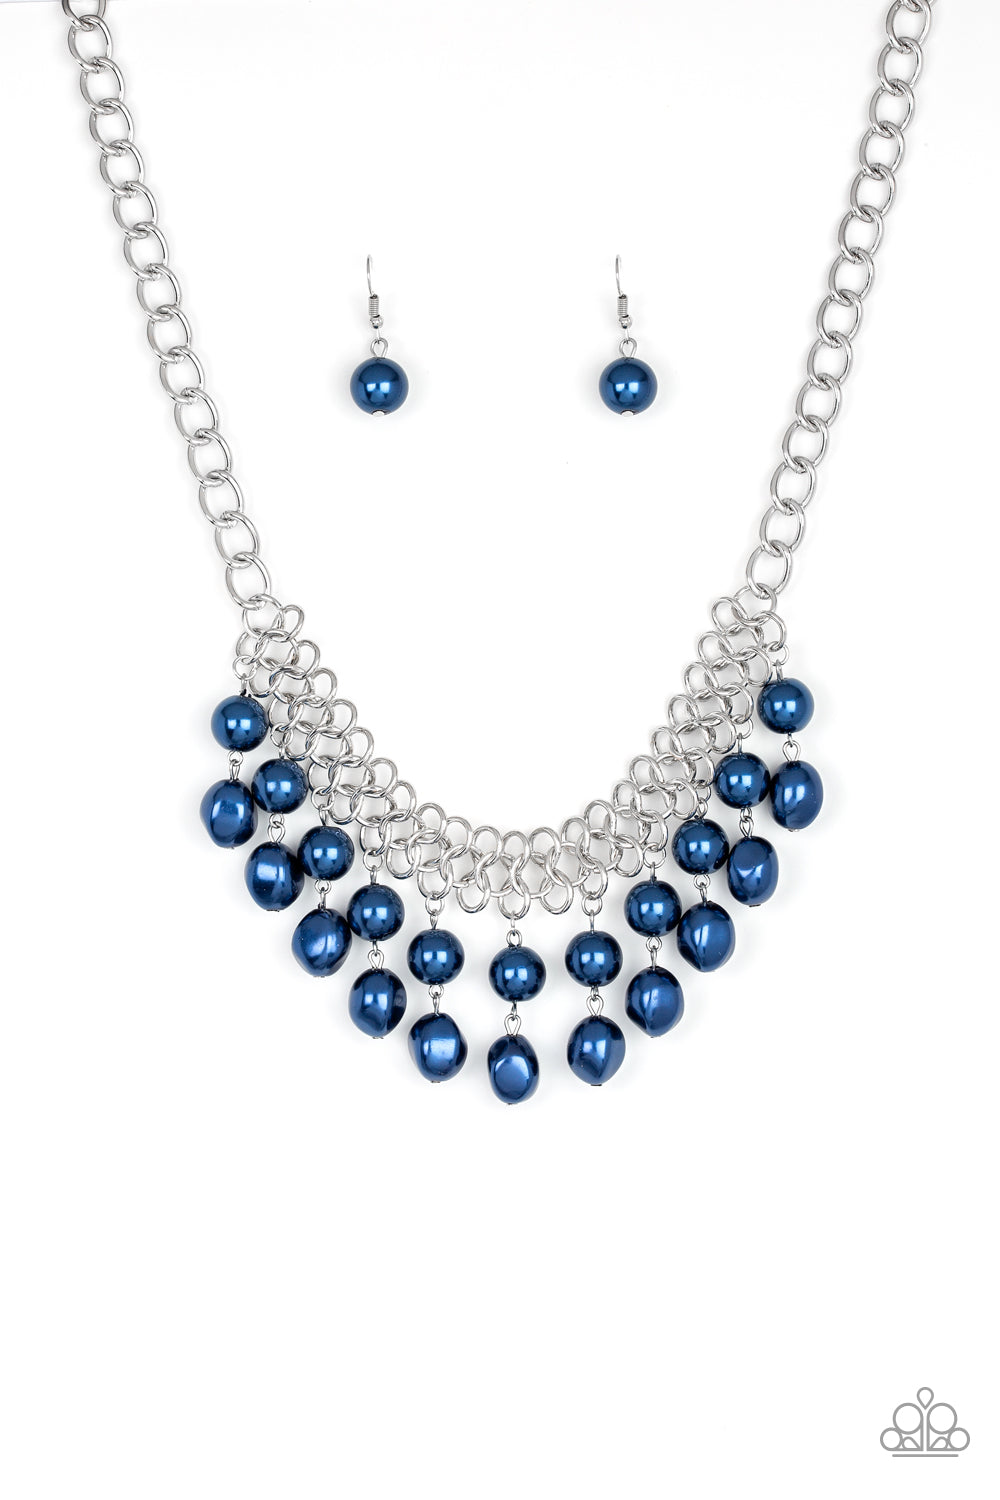 Paparazzi - 5th Avenue Fleek - Blue Necklace & Earrings